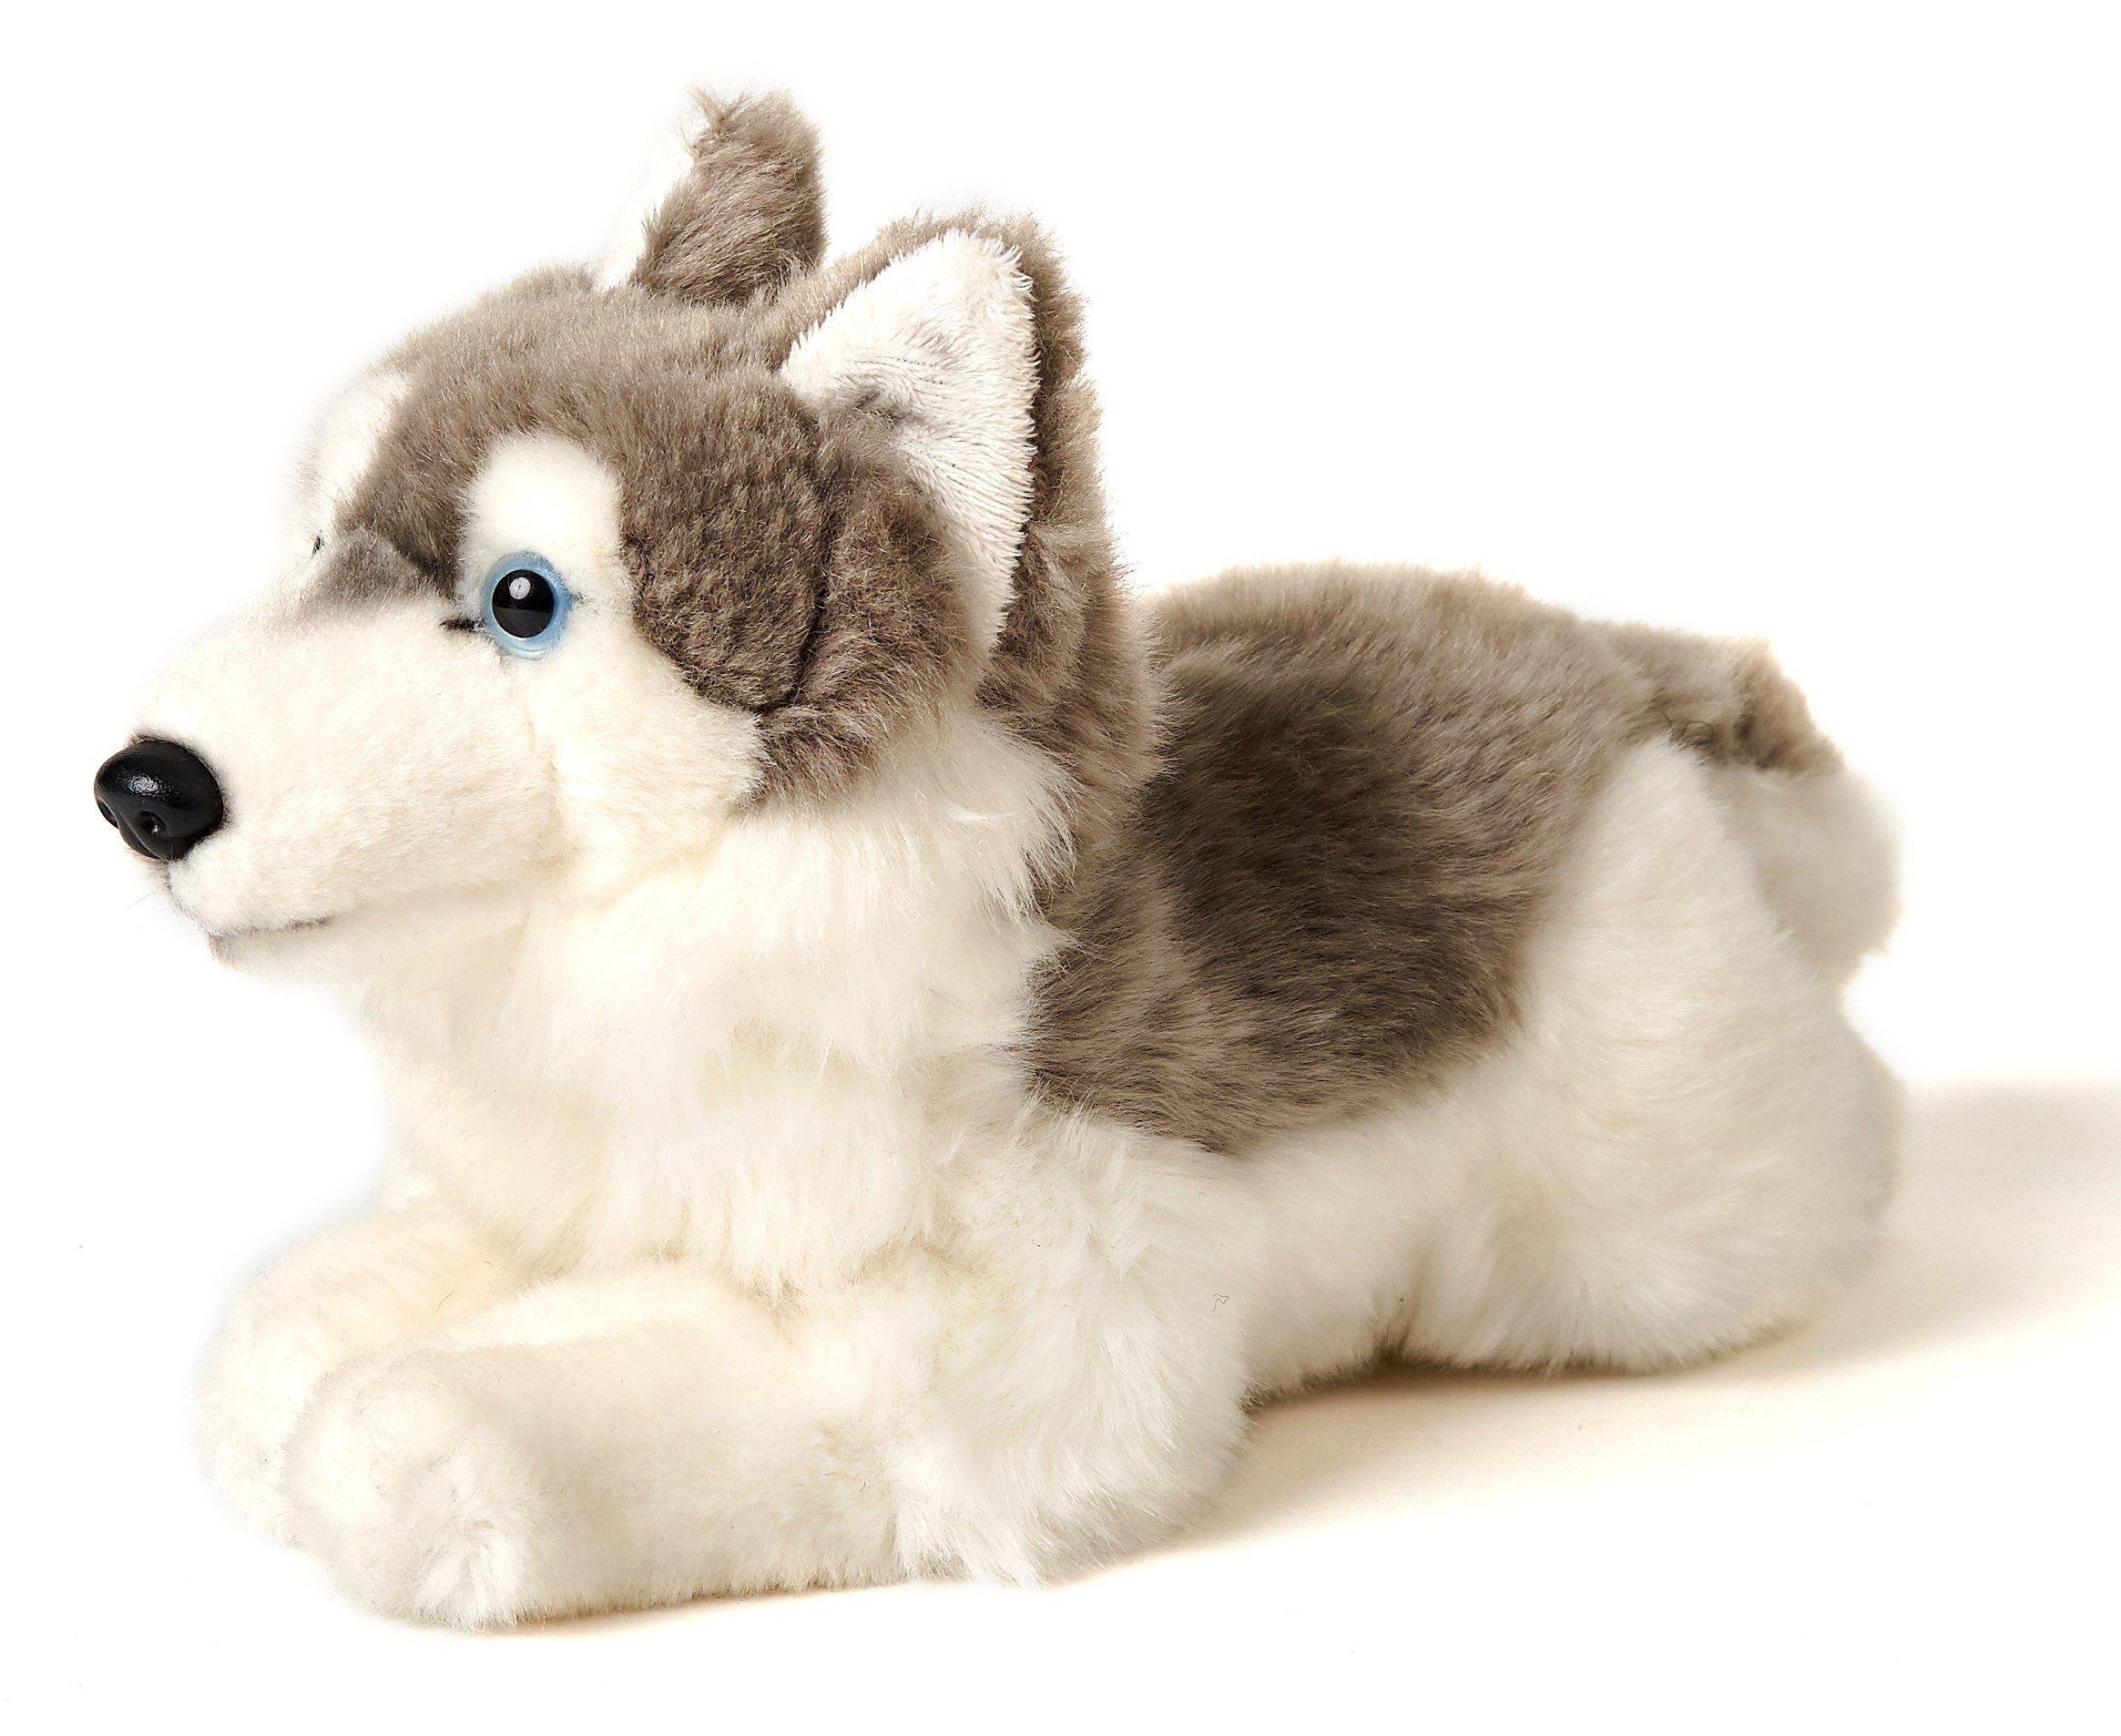 Uni-Toys Kuscheltier Husky grau, liegend - 35 cm (Länge) - Plüsch-Hund - Plüschtier, zu 100 % recyceltes Füllmaterial